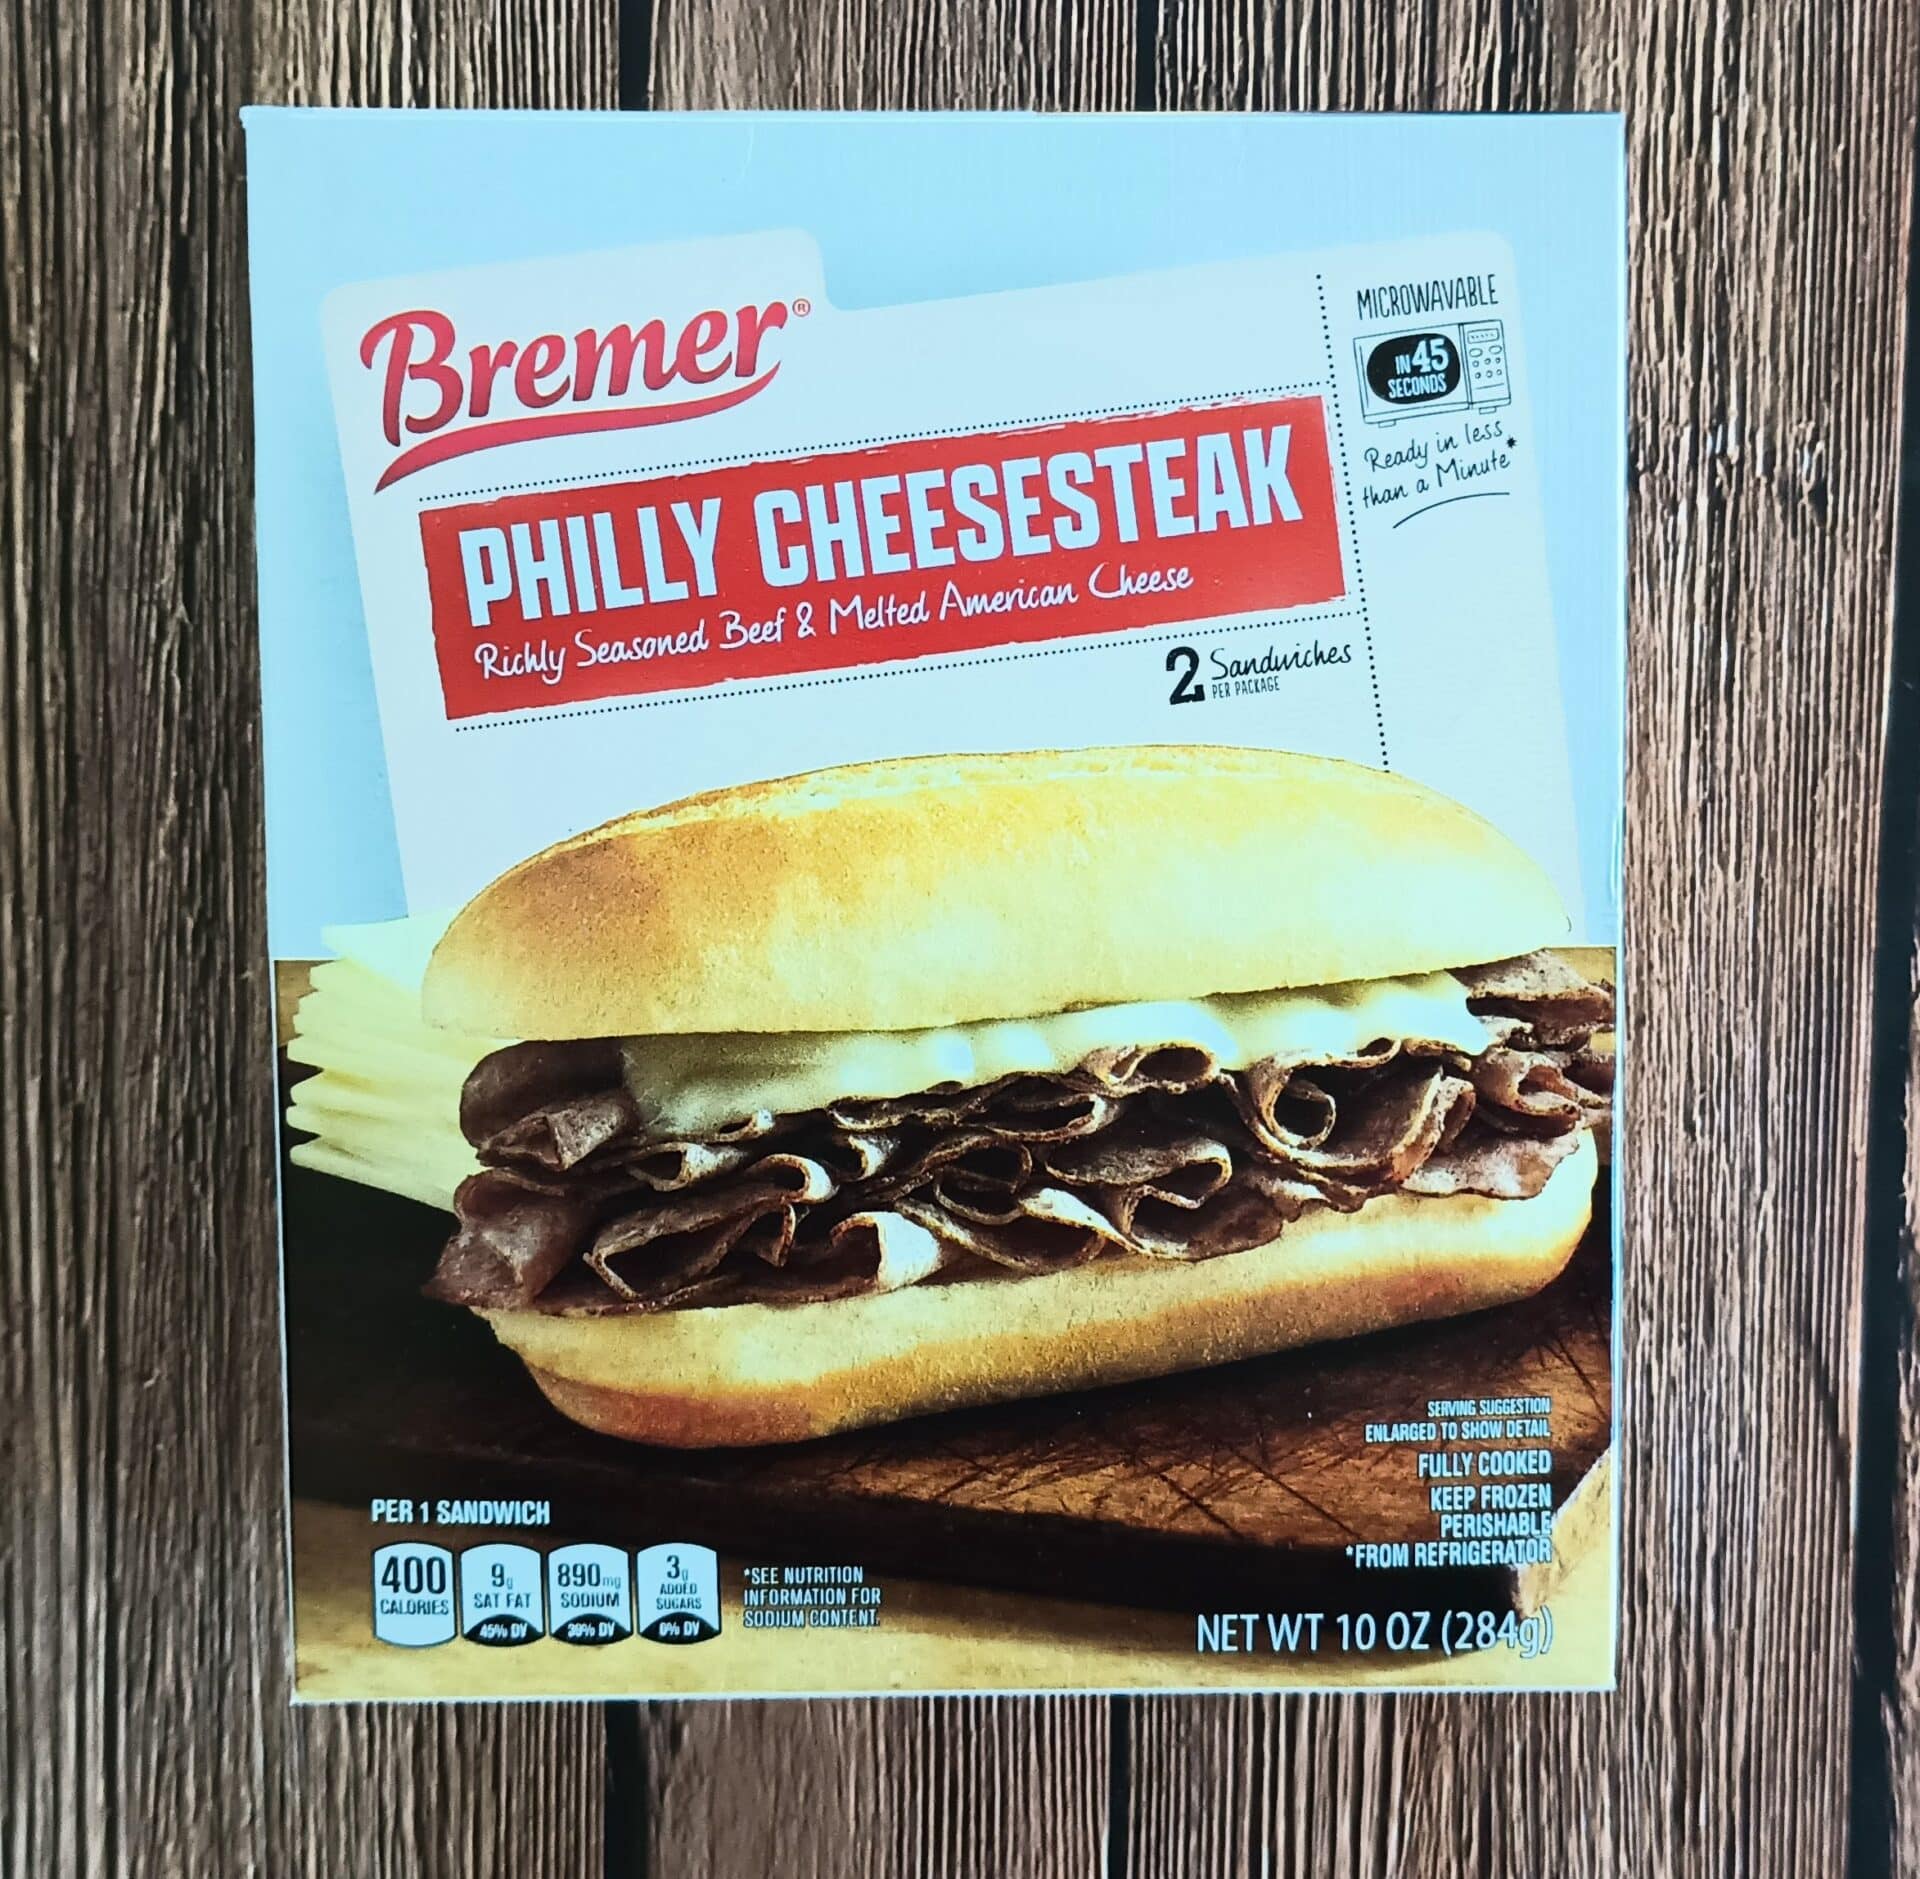 Bremer Philly Cheesesteak Sandwiches